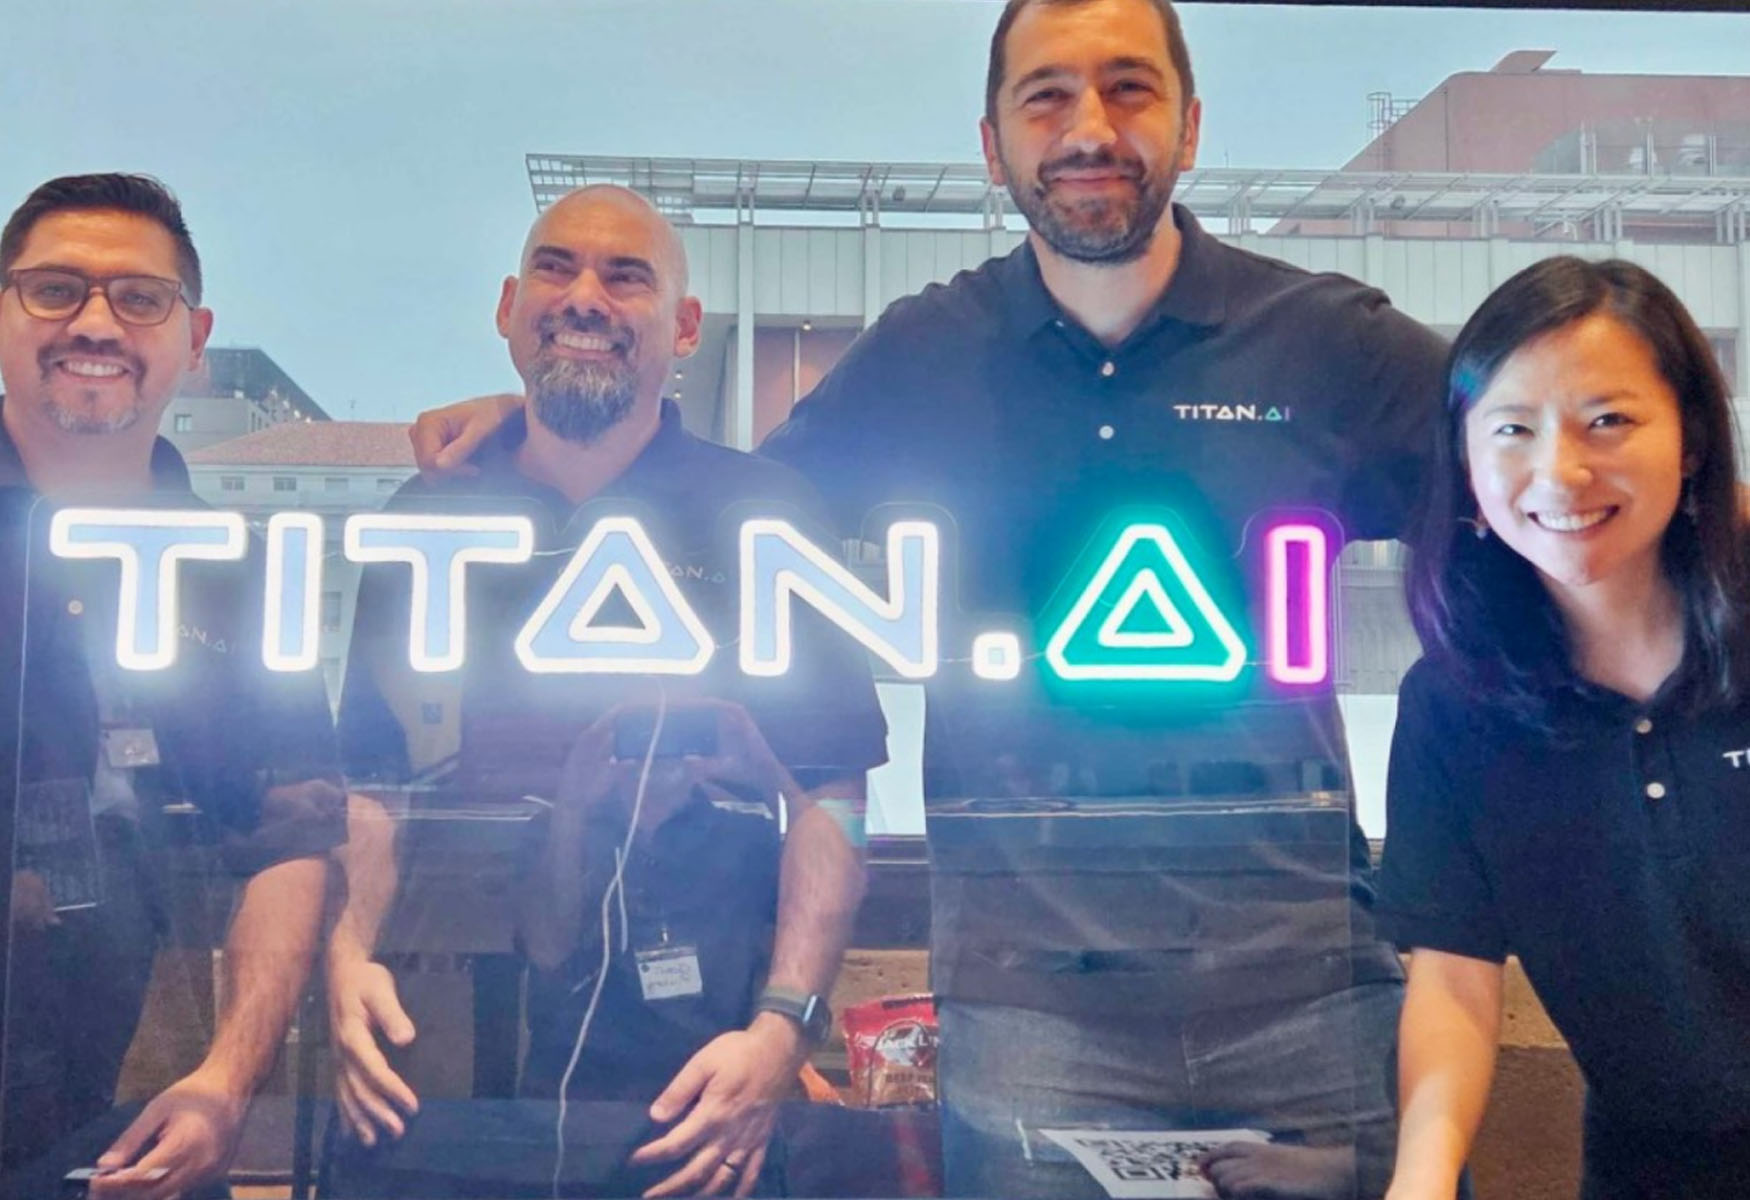 titan-ai-revolutionizes-mobile-game-development-with-generative-ai